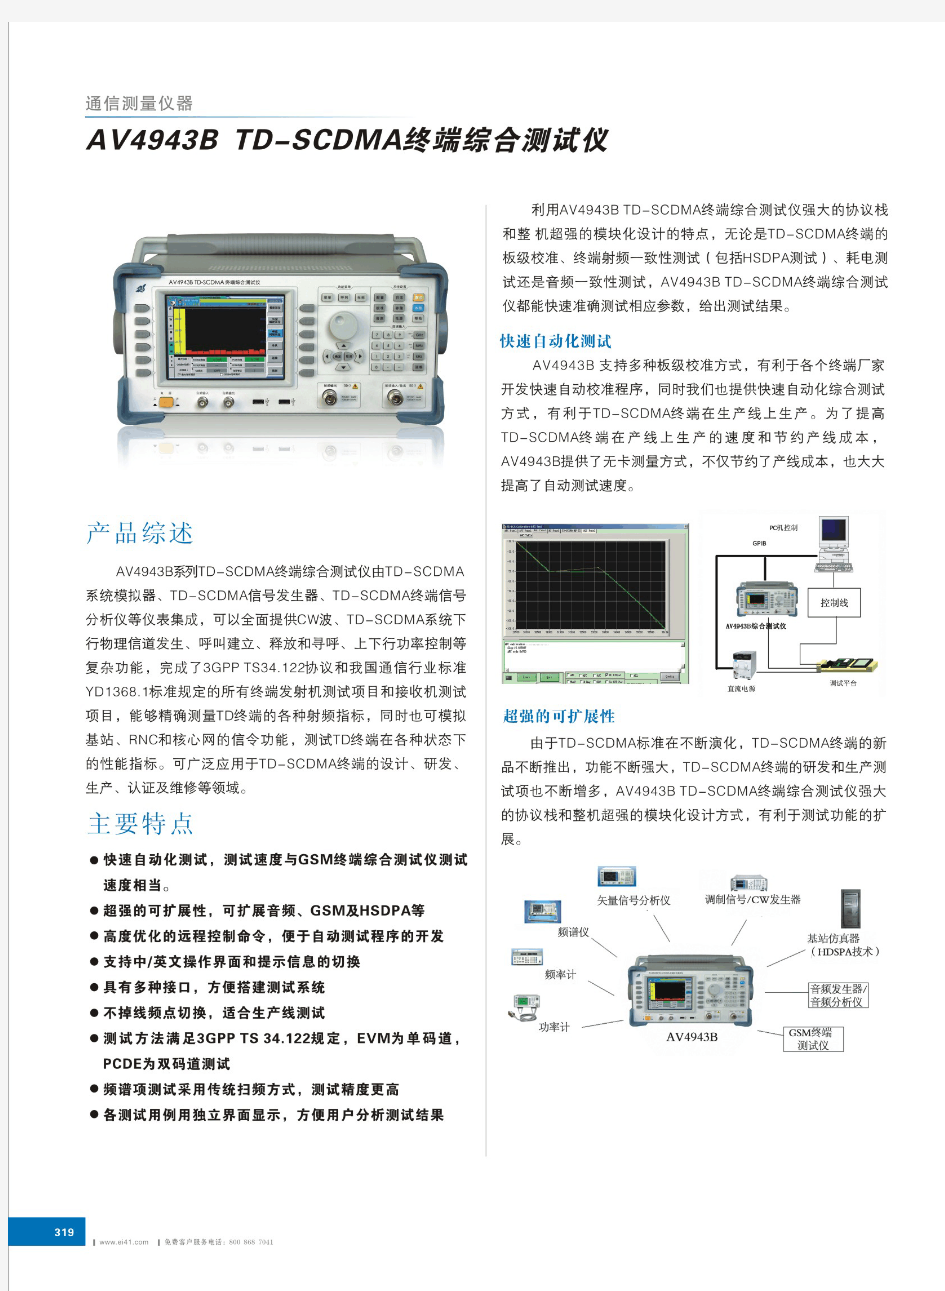 快速自动化测试—AV4943B TD-SCDMA终端综合测试仪—中国电科41所研制